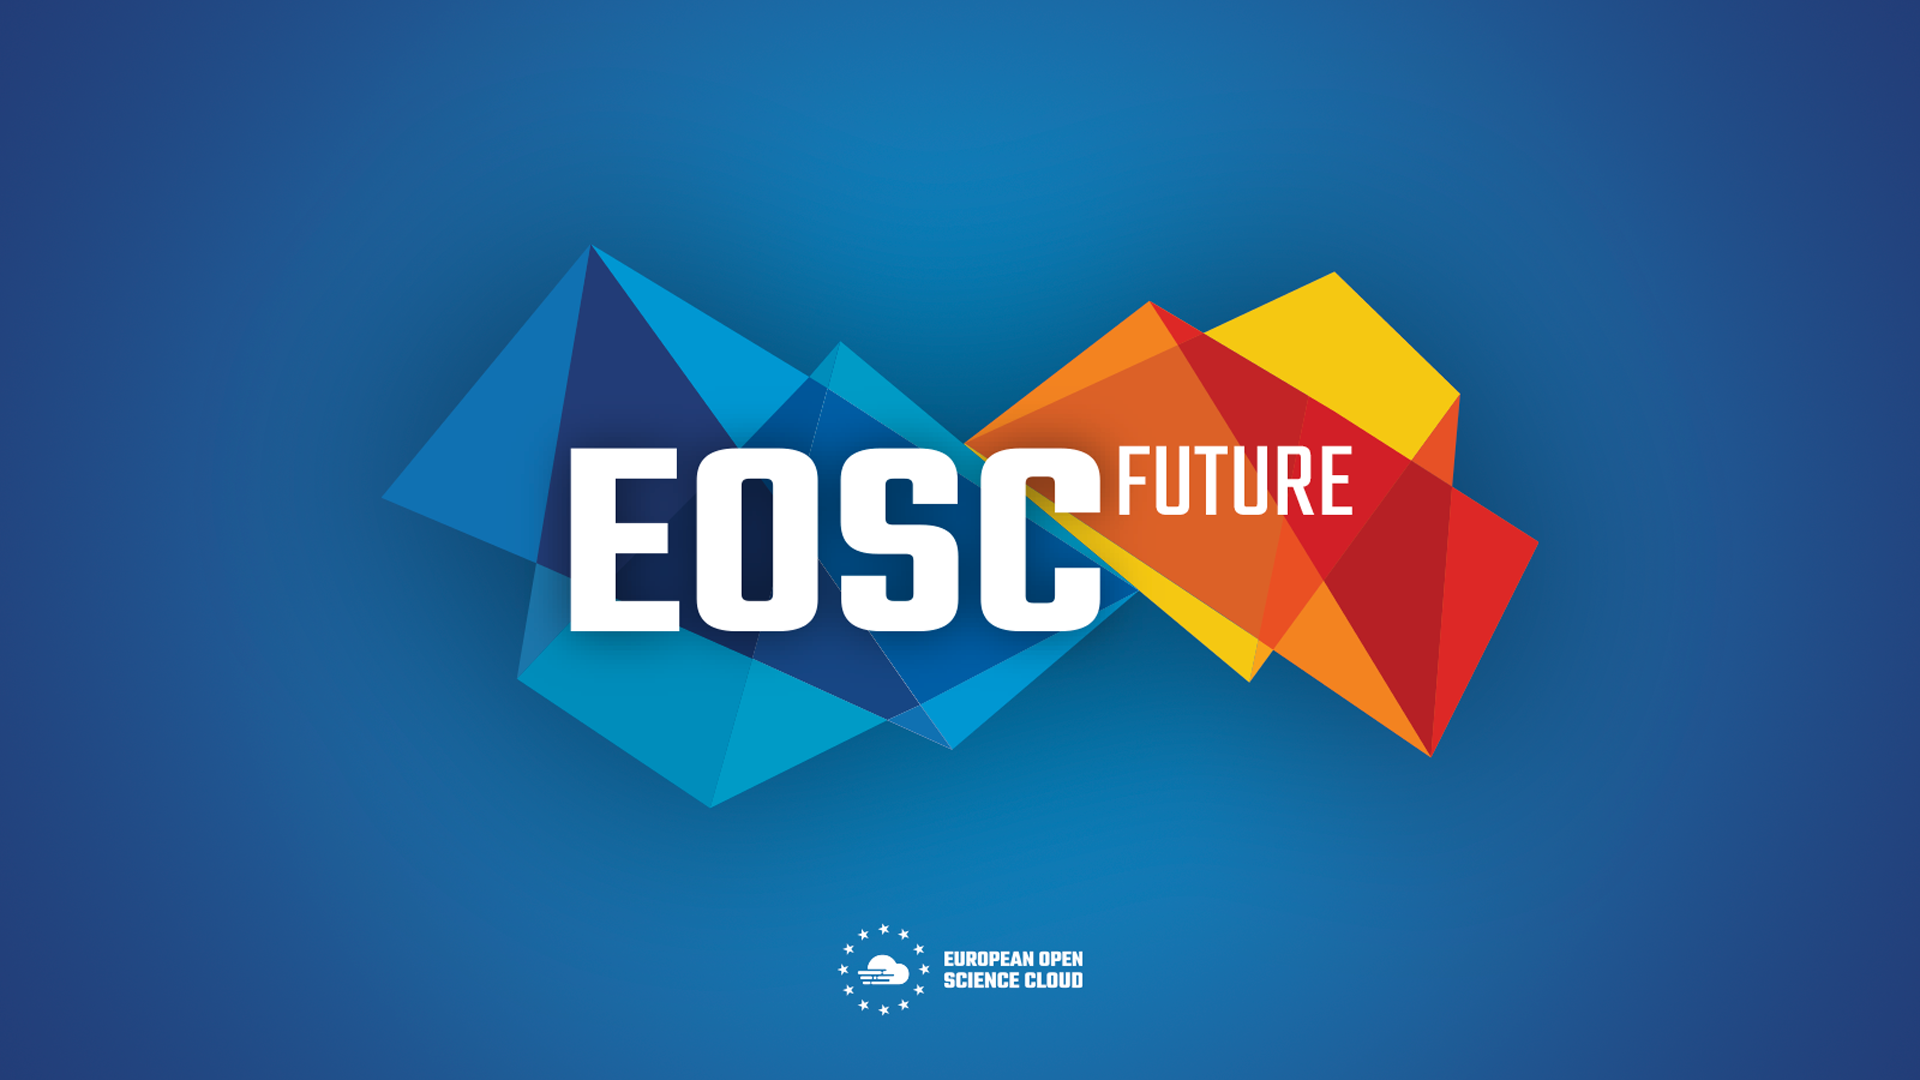 Promocja otwartej nauki w projekcie EOSC FUTURE